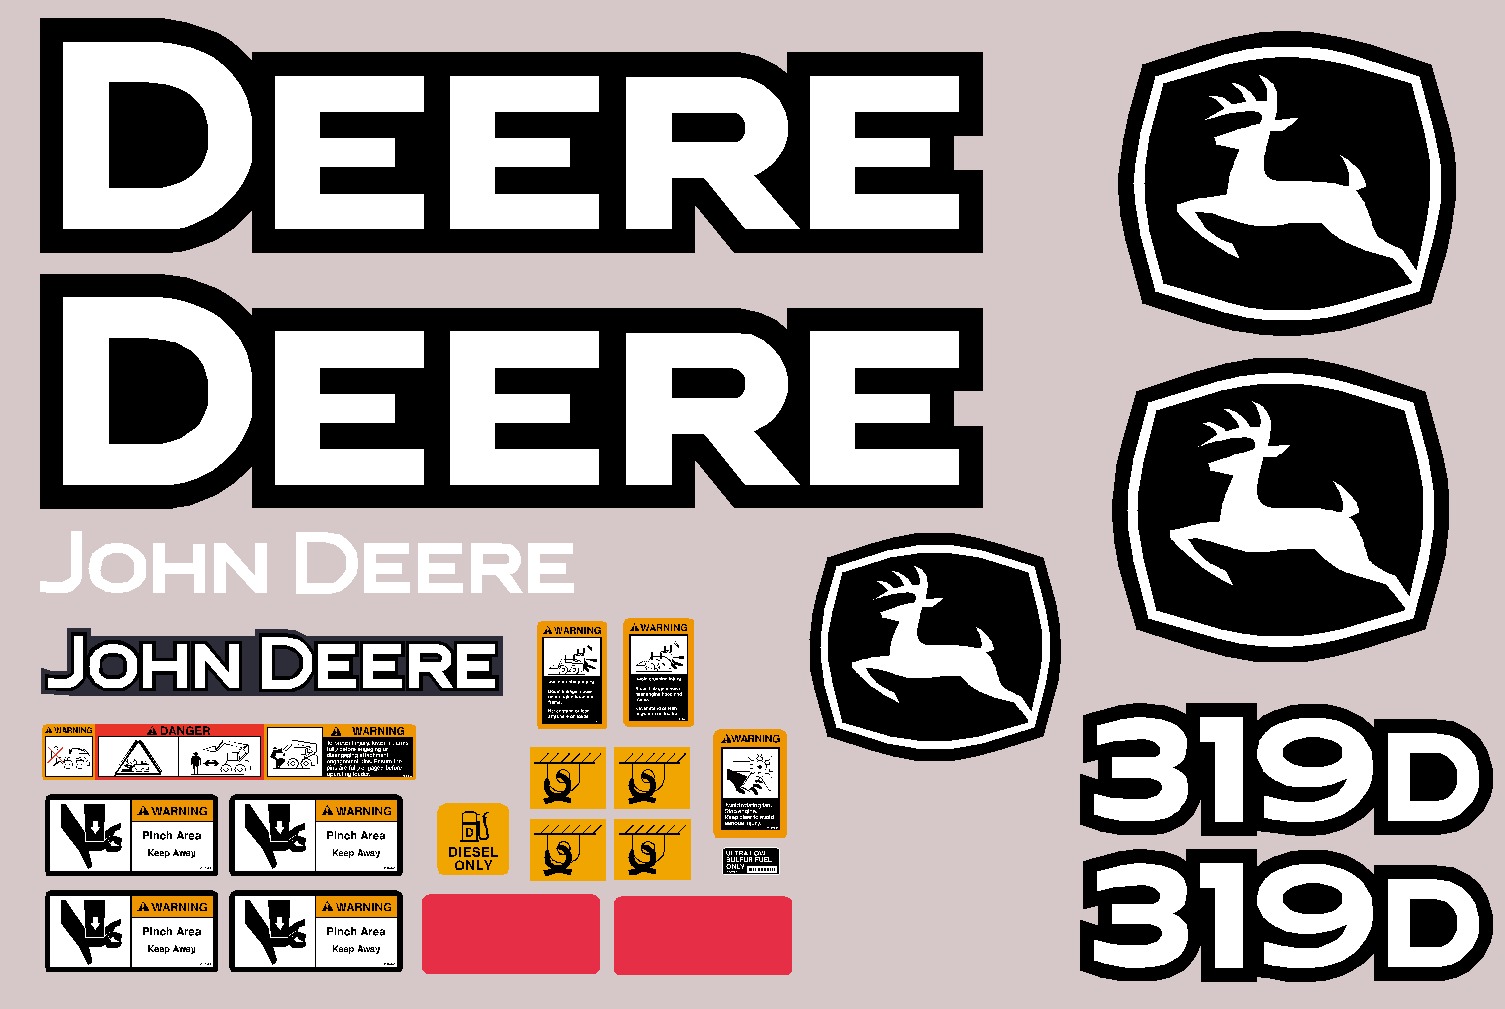 Deere Skid Steer Loaders 319D Decal Packages